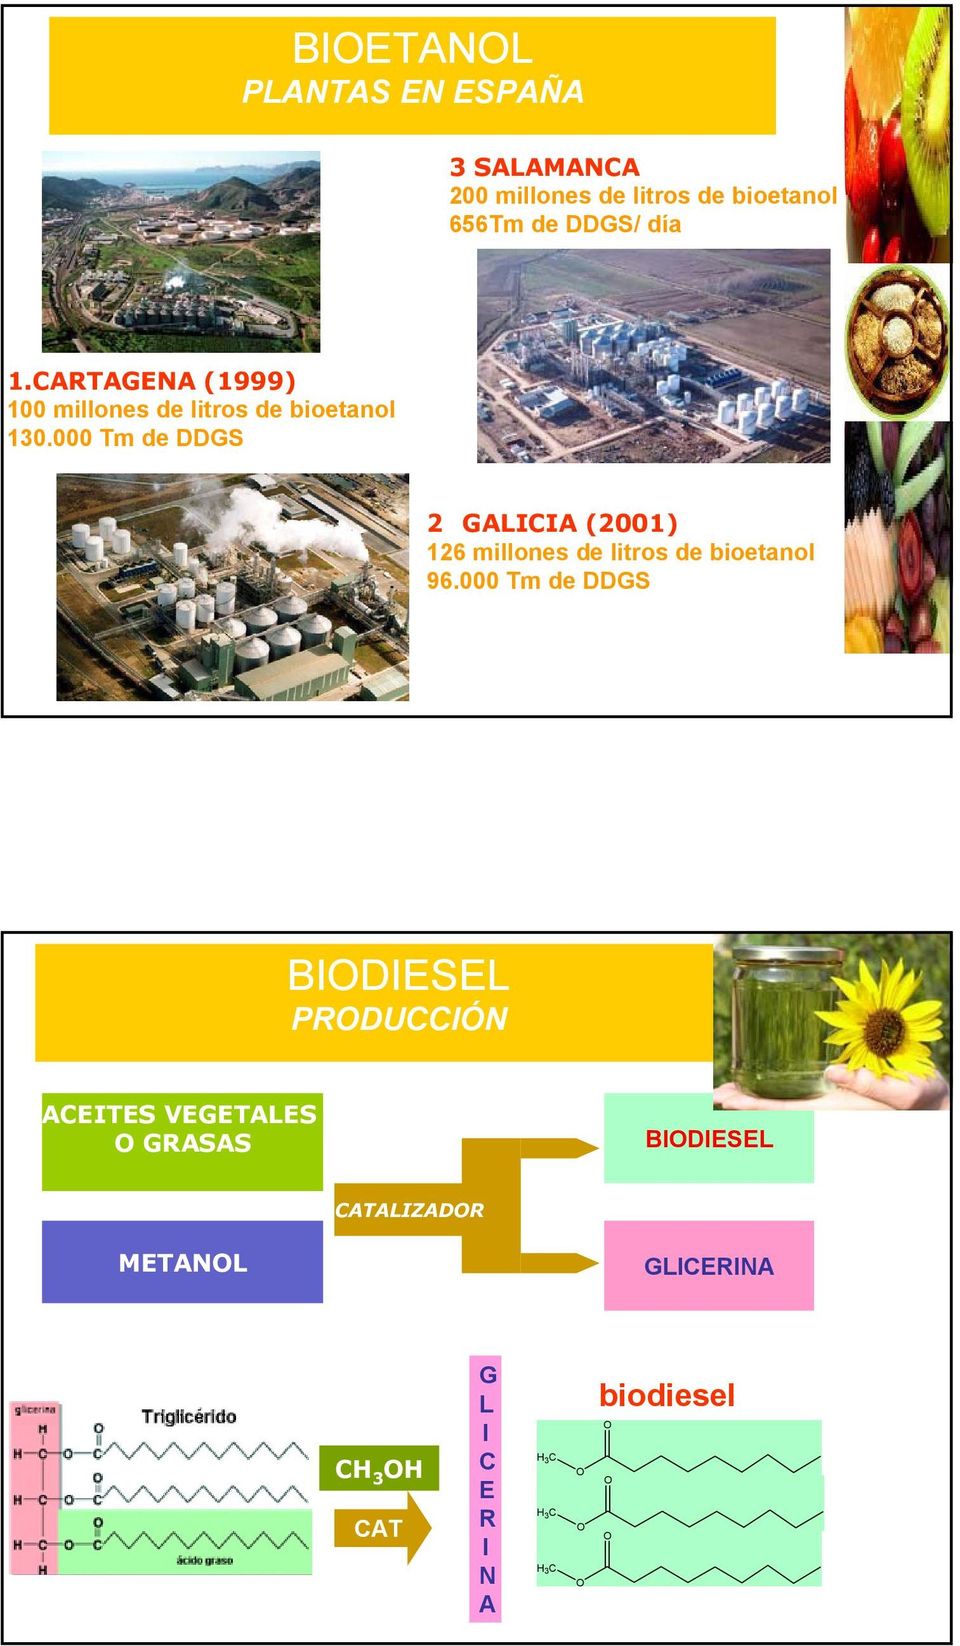 000 Tm de DDGS 2 GALICIA (2001) 126 millones de litros de bioetanol 96.